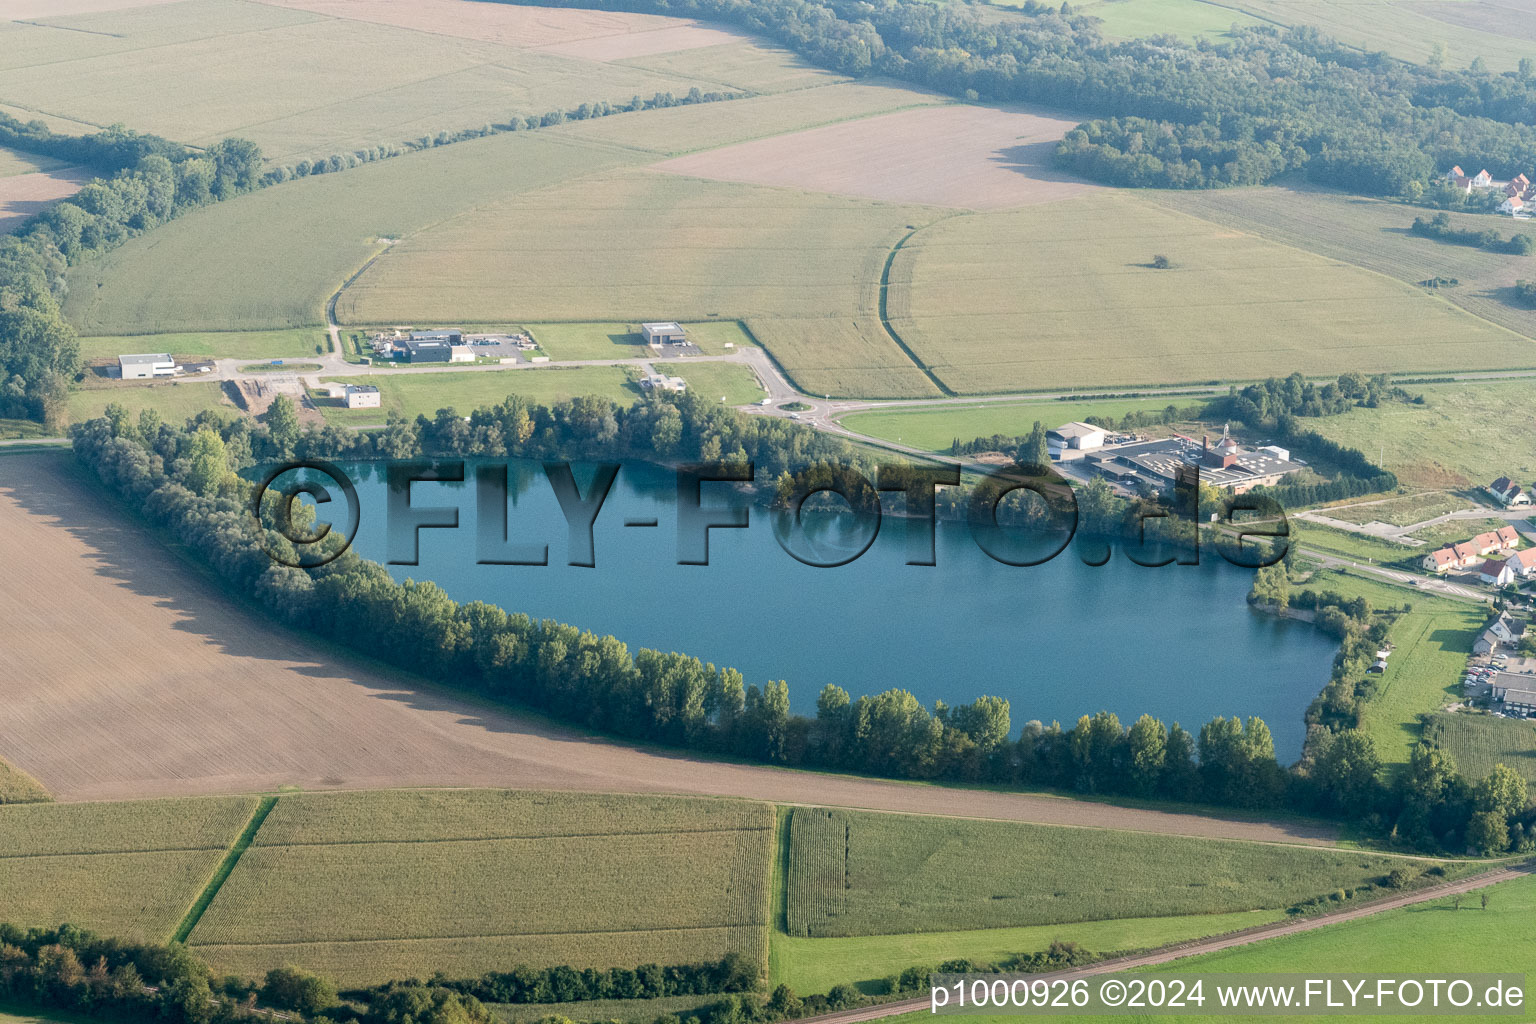 Rountzenheim im Bundesland Bas-Rhin, Frankreich von der Drohne aus gesehen